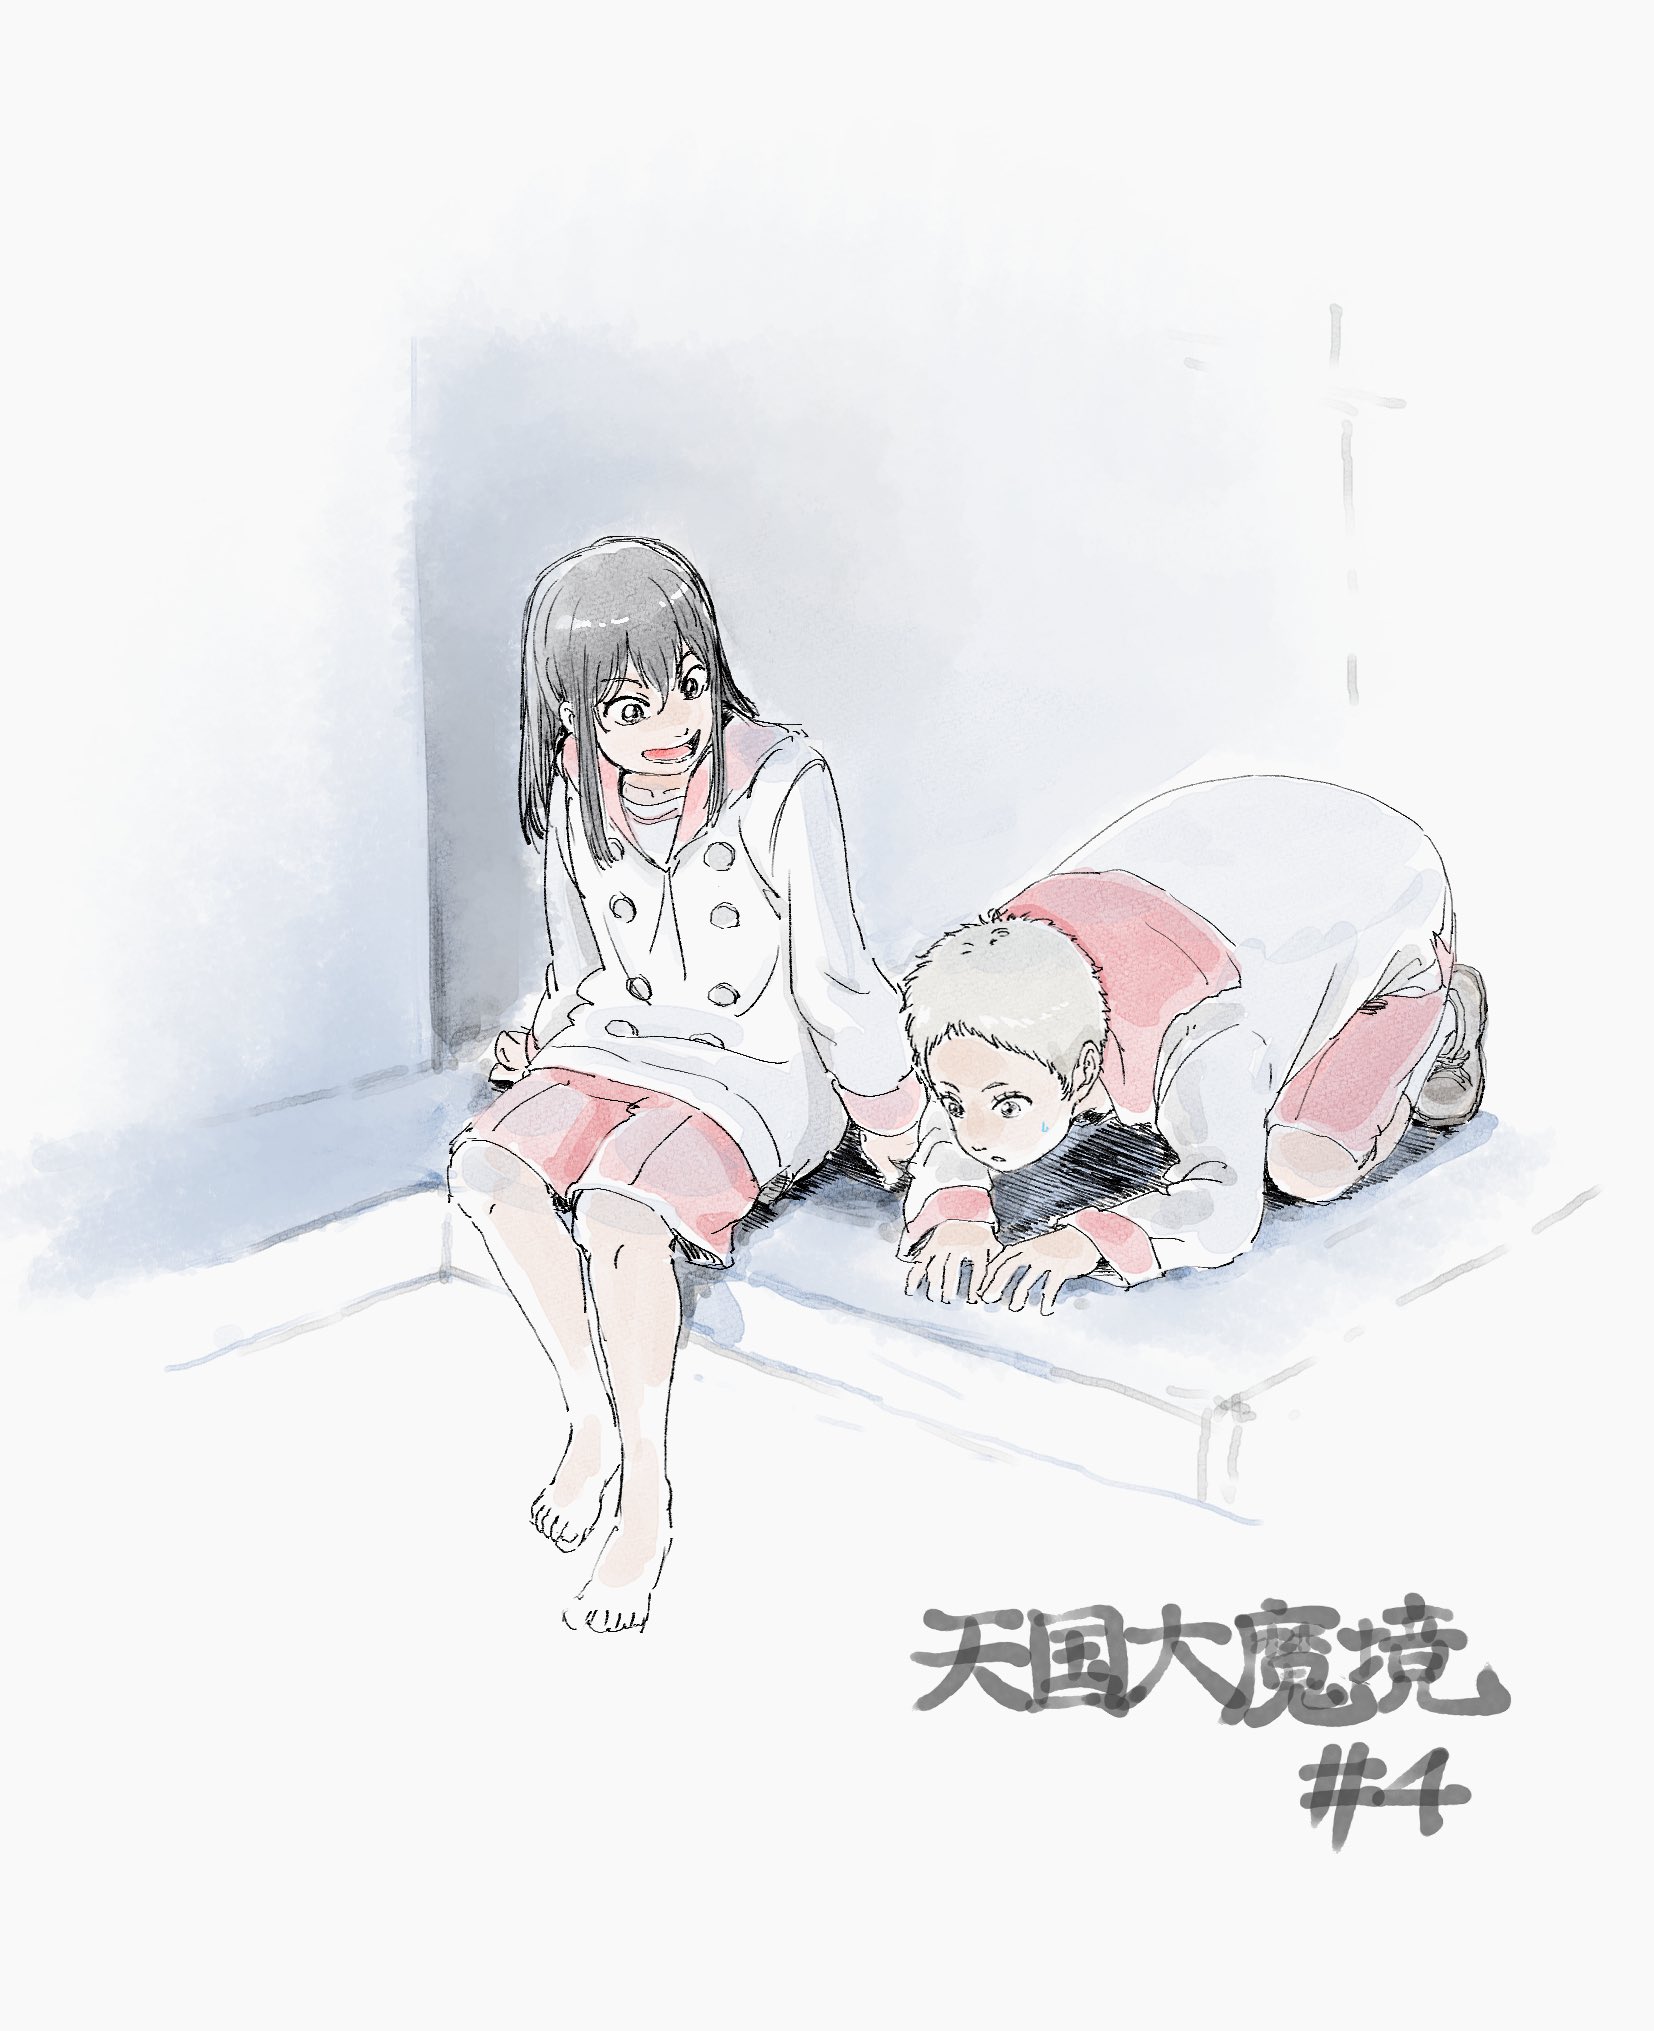 tokio and kuku (tengoku daimakyou) drawn by zhiguang_liu